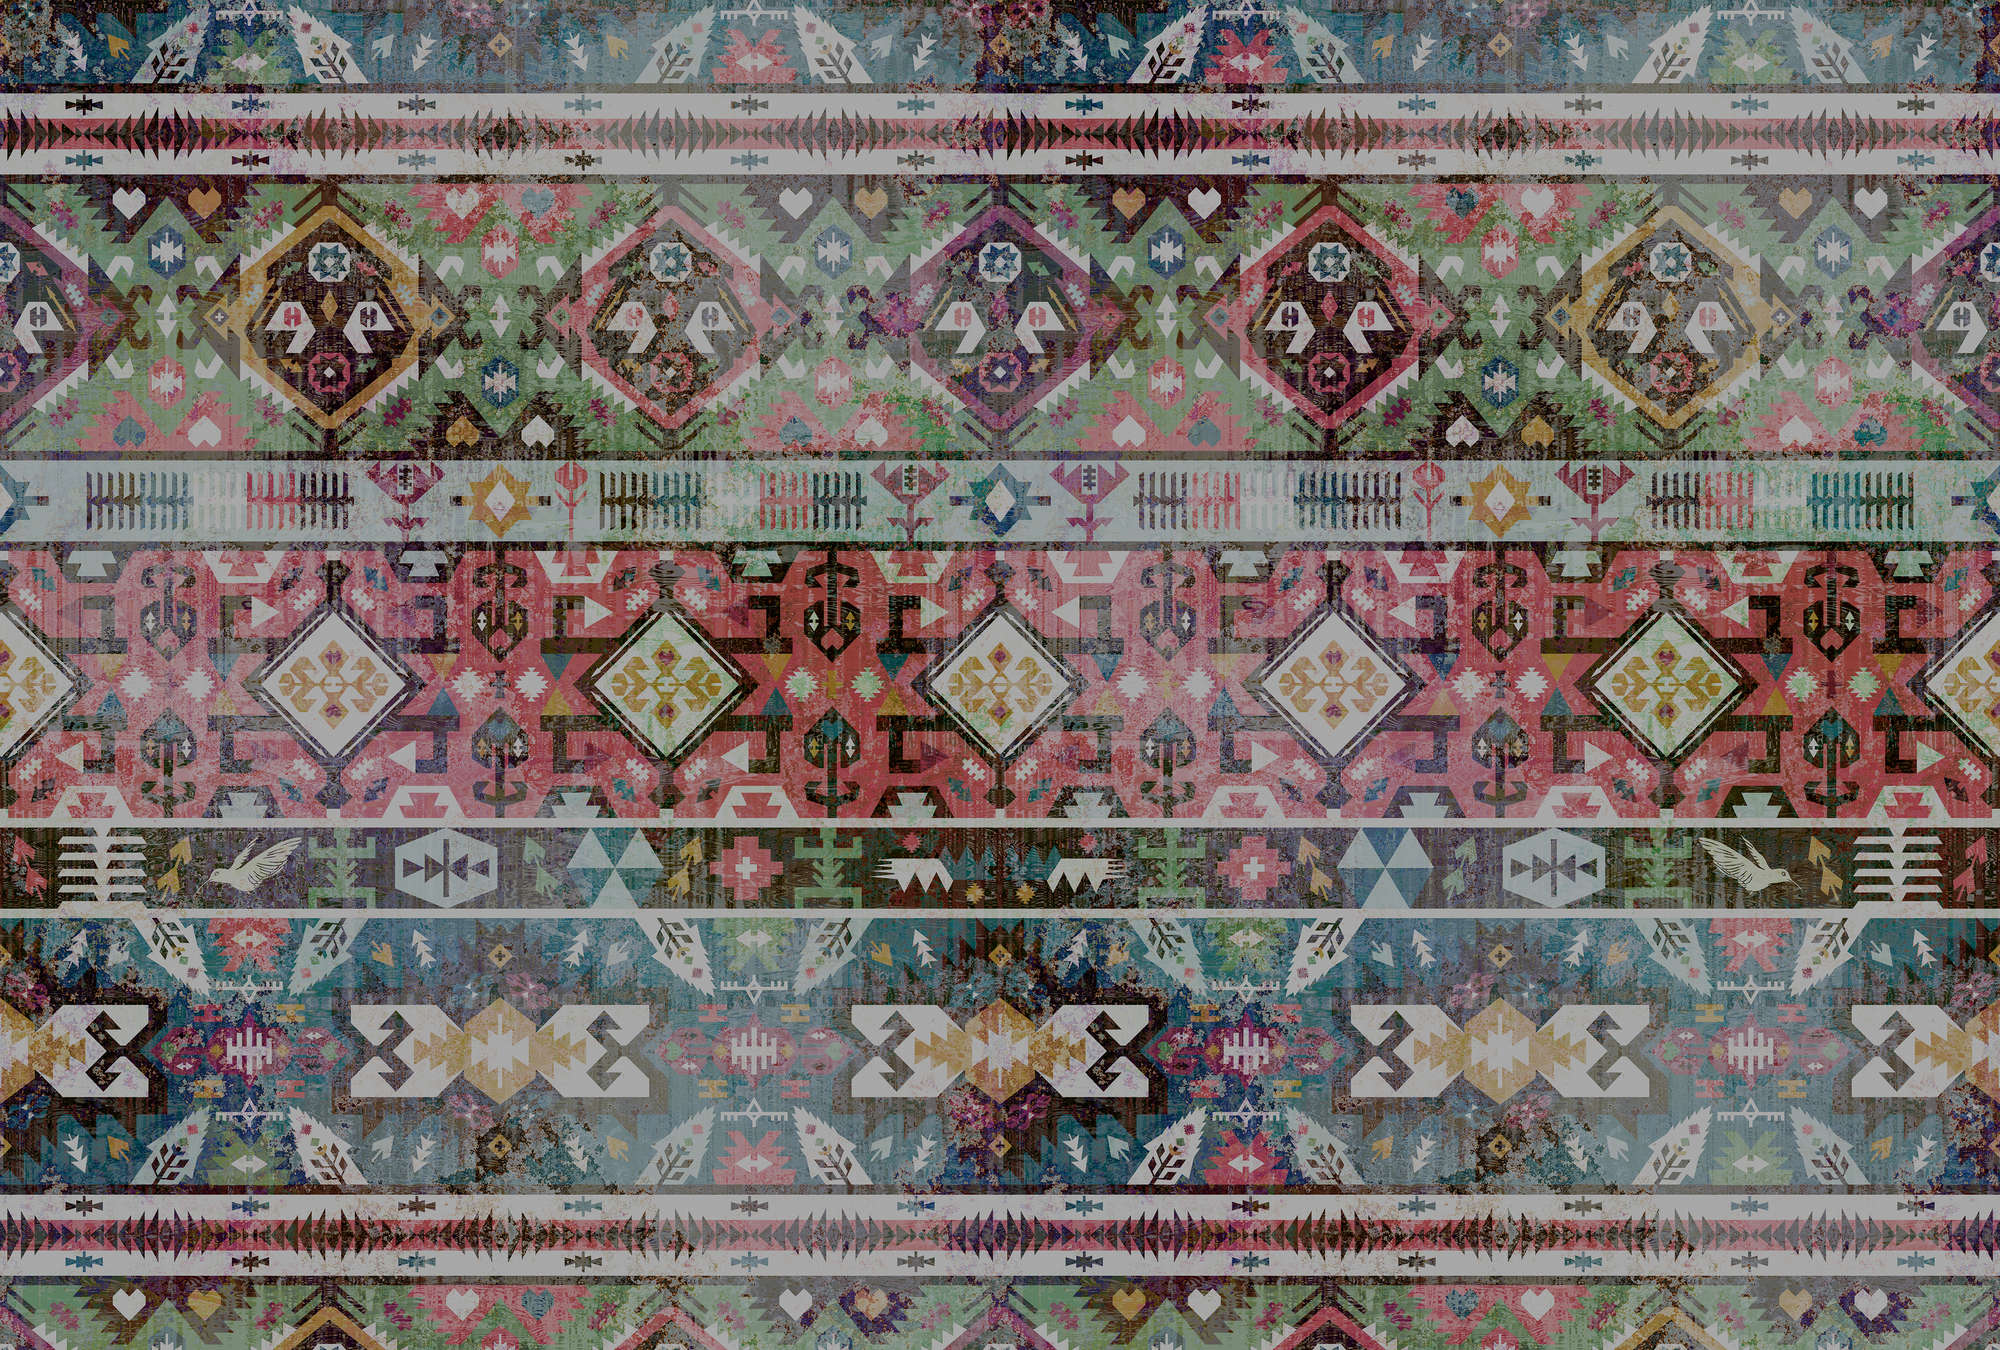             Muurschildering etnisch textielpatroon, geometrisch - veelkleurig
        